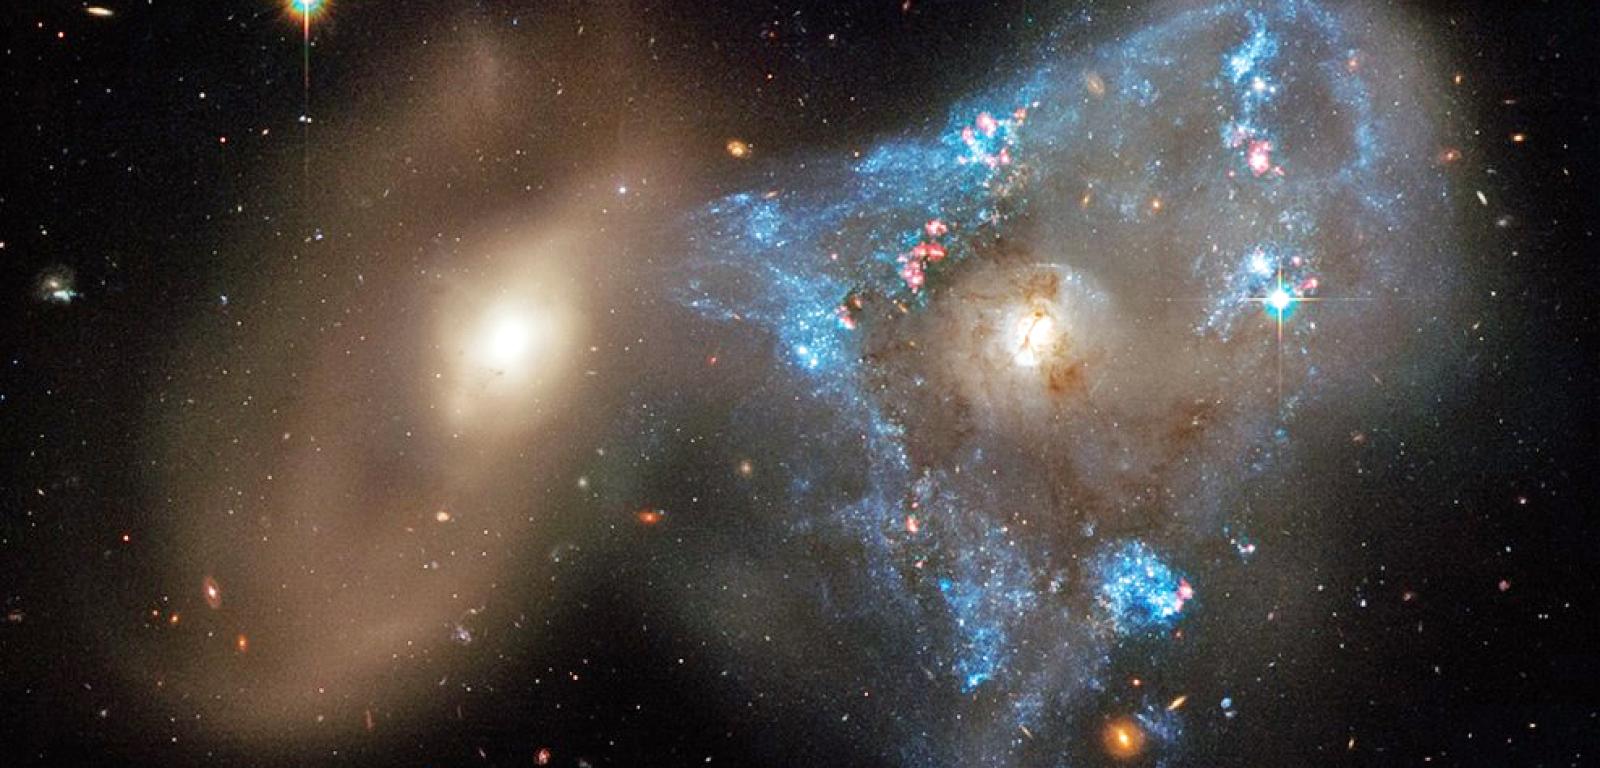 Kolizja galaktyk obserwowana przez teleskop Hubble’a: to prawdopodobnie w wyniku takich interakcji dokarmiane są czarne dziury w centrach galaktyk.